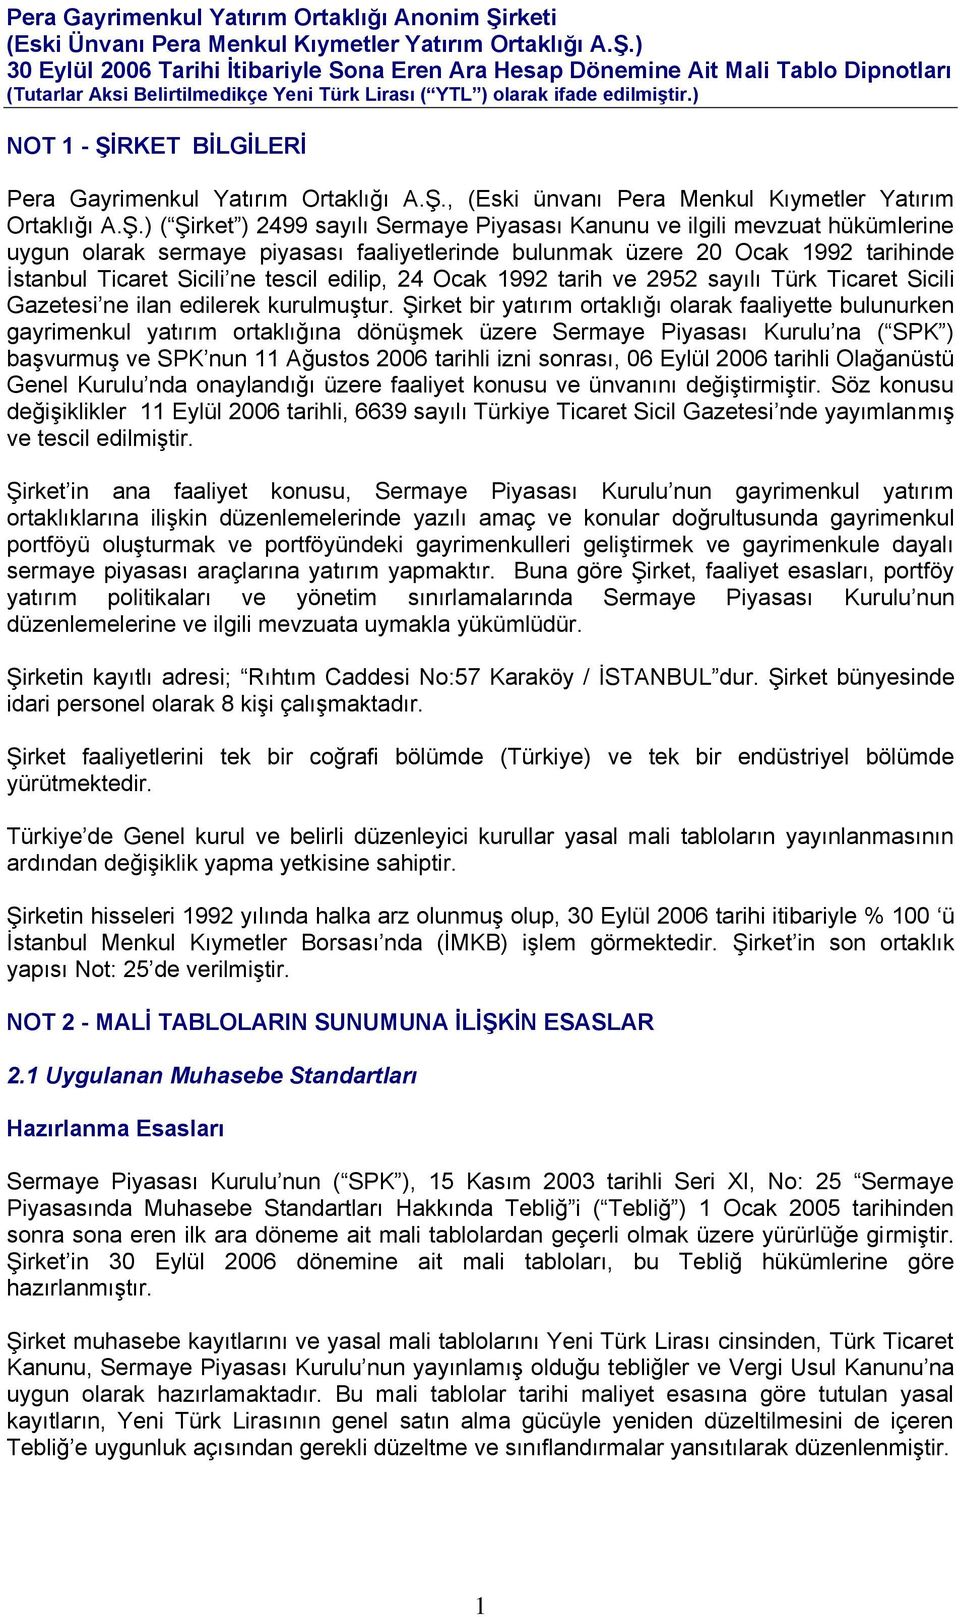 ) ( Şirket ) 2499 sayılı Sermaye Piyasası Kanunu ve ilgili mevzuat hükümlerine uygun olarak sermaye piyasası faaliyetlerinde bulunmak üzere 20 Ocak 1992 tarihinde İstanbul Ticaret Sicili ne tescil